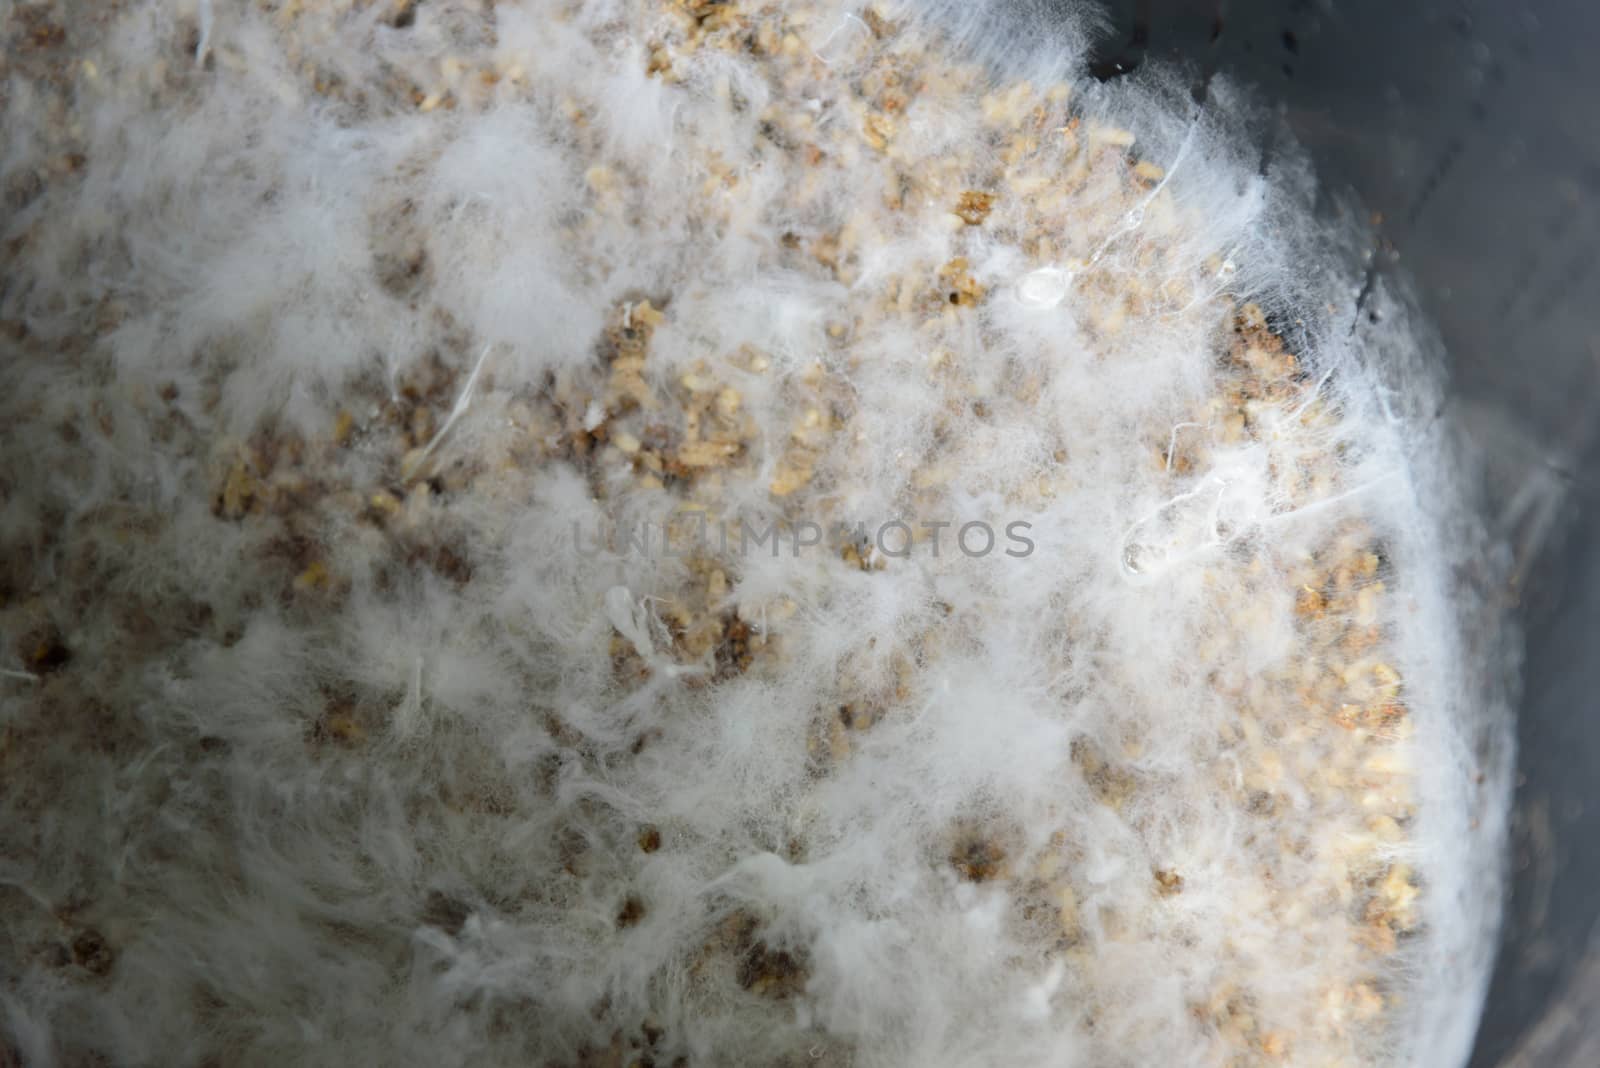 Closeup to Fungi microorganism Termites in the Bin